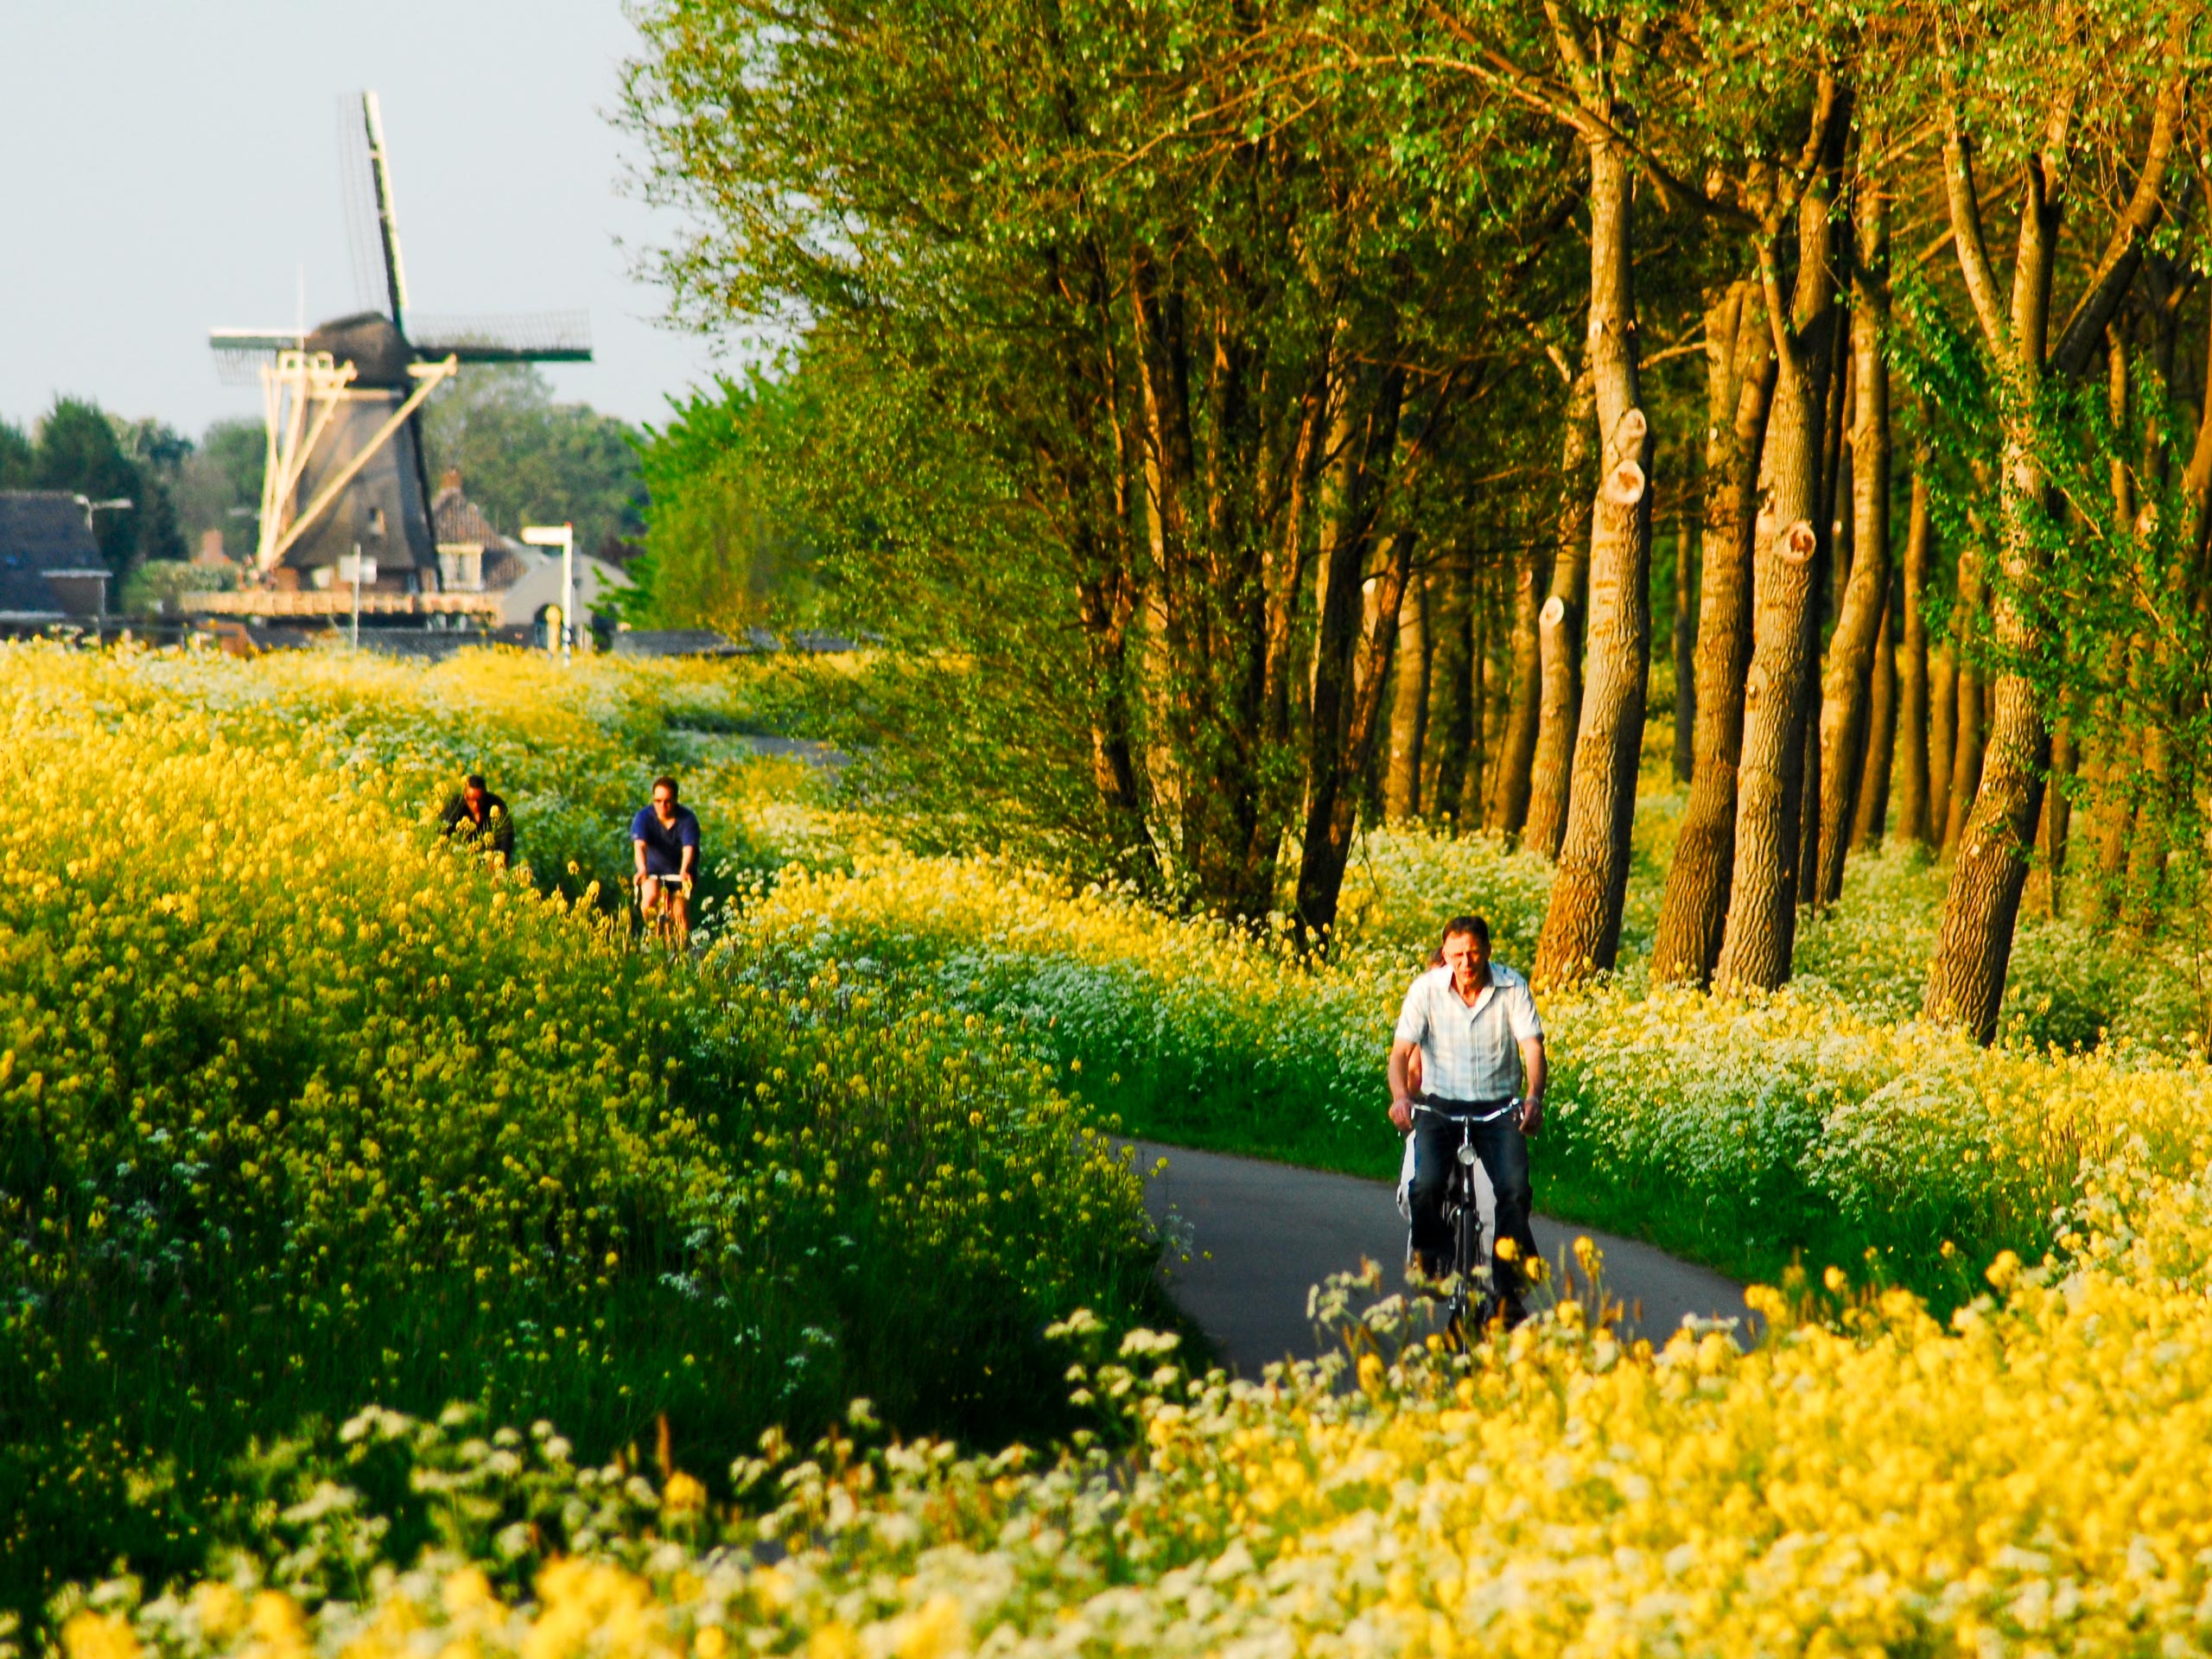 Molen Delft cycling road